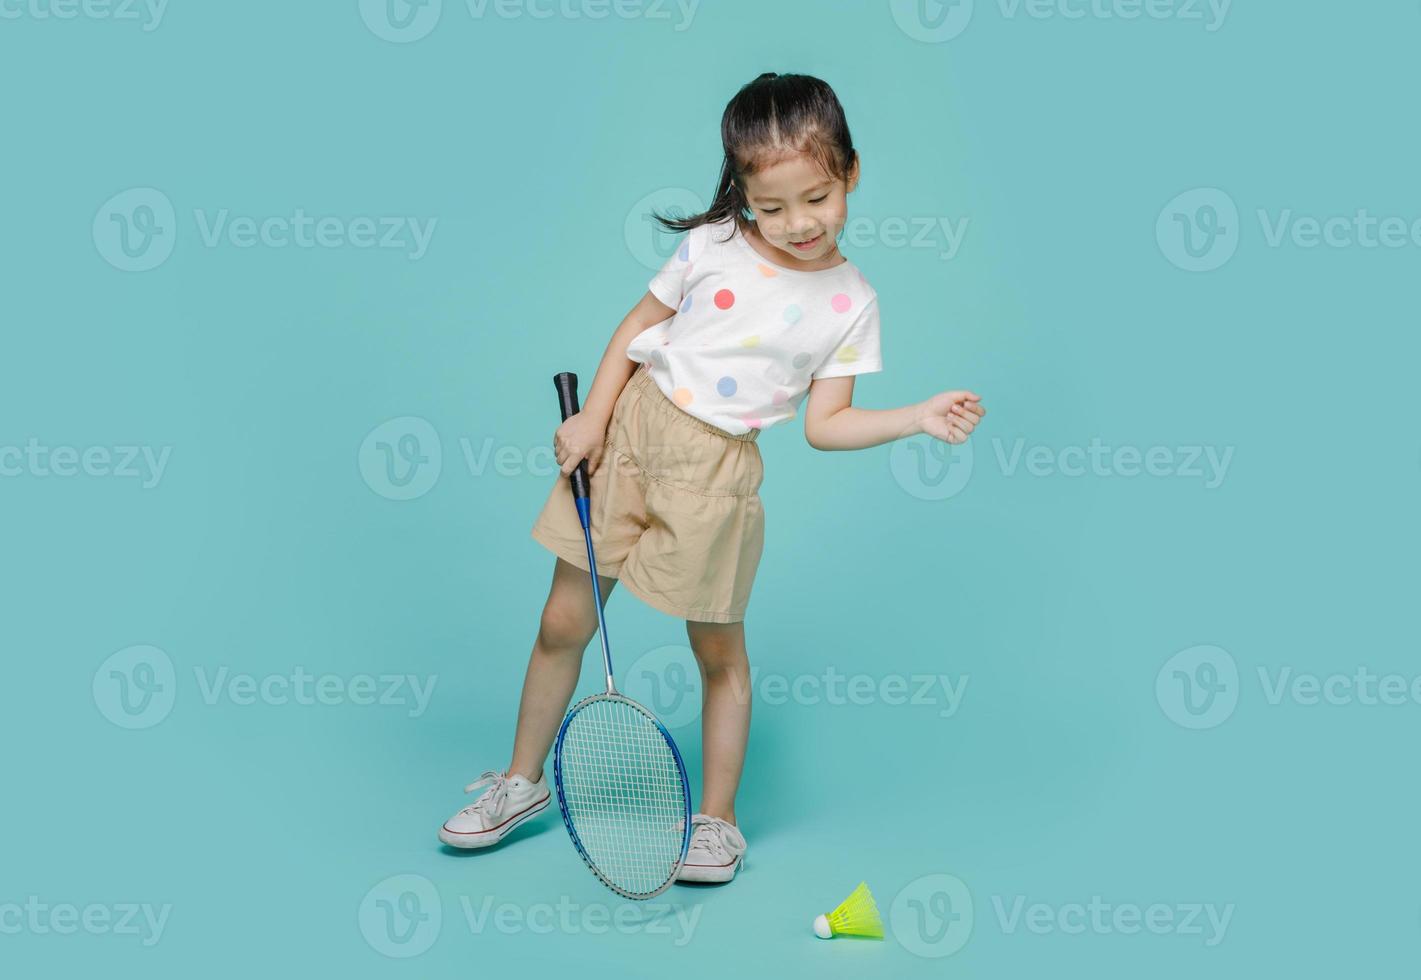 Fröhliches asiatisches Kind, das Badminton spielt, Studioaufnahme isoliert auf buntem blauem Hintergrund foto